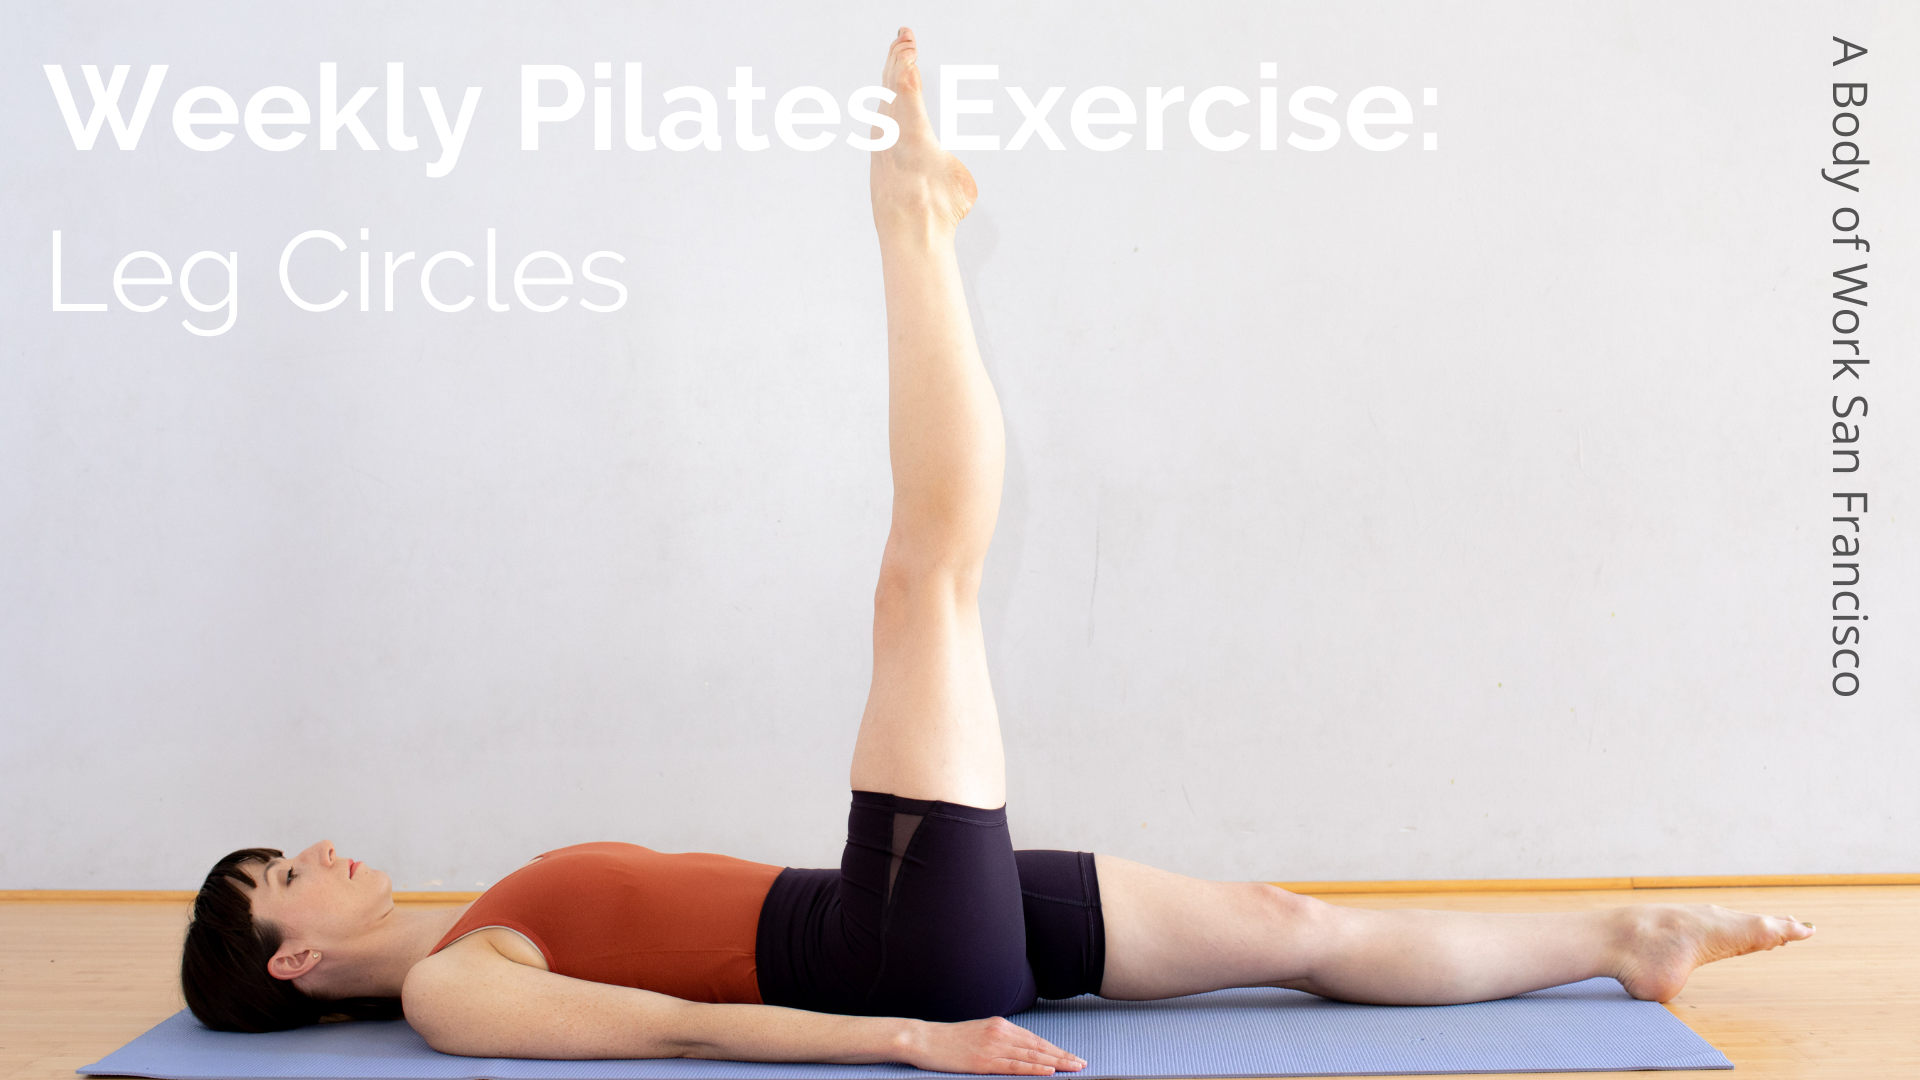 ITT Pilates Exercise: Leg Circles — A Body of Work